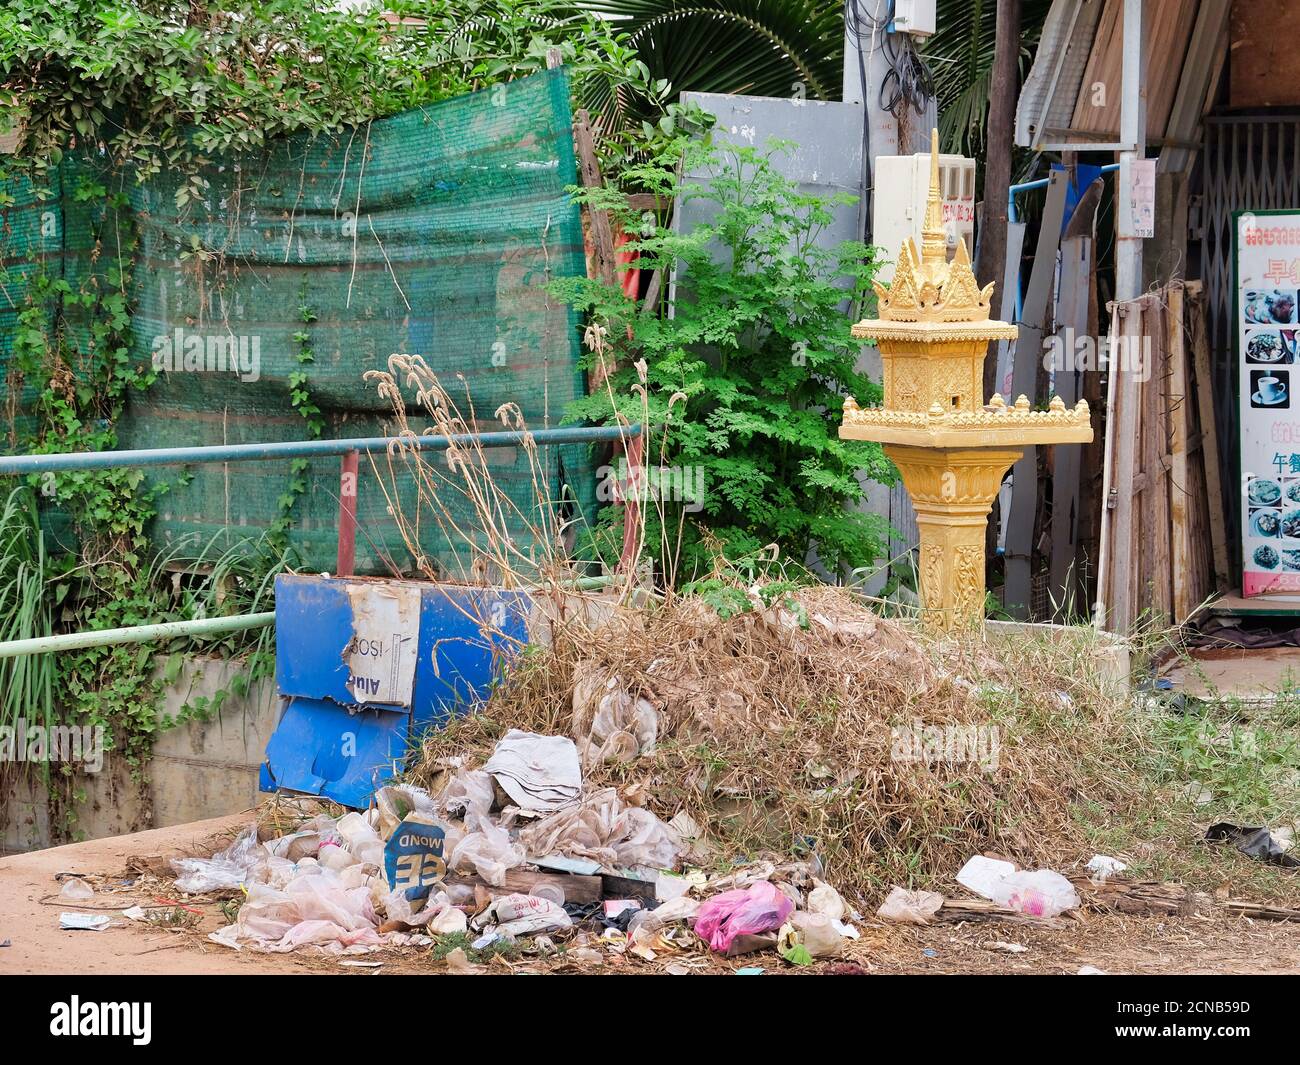 Camboya, Siem Reap 12/08/2018 un pequeño santuario budista entre los montones de basura en una calle de la ciudad, un basurero cerca de un objeto religioso Foto de stock